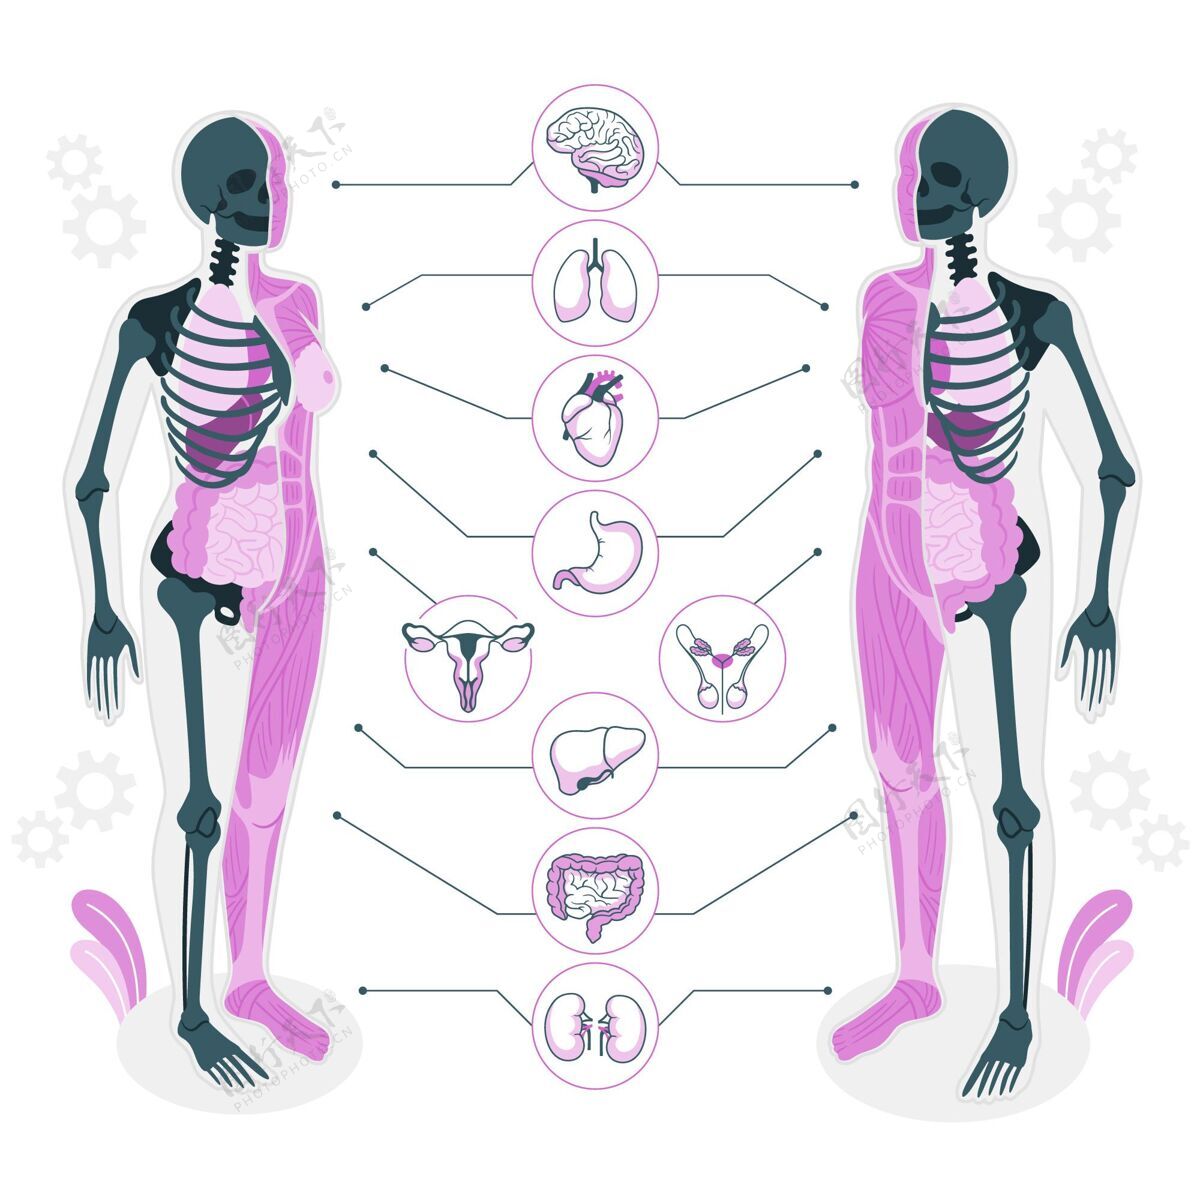 人体人体解剖学概念图解剖学骨骼生物学